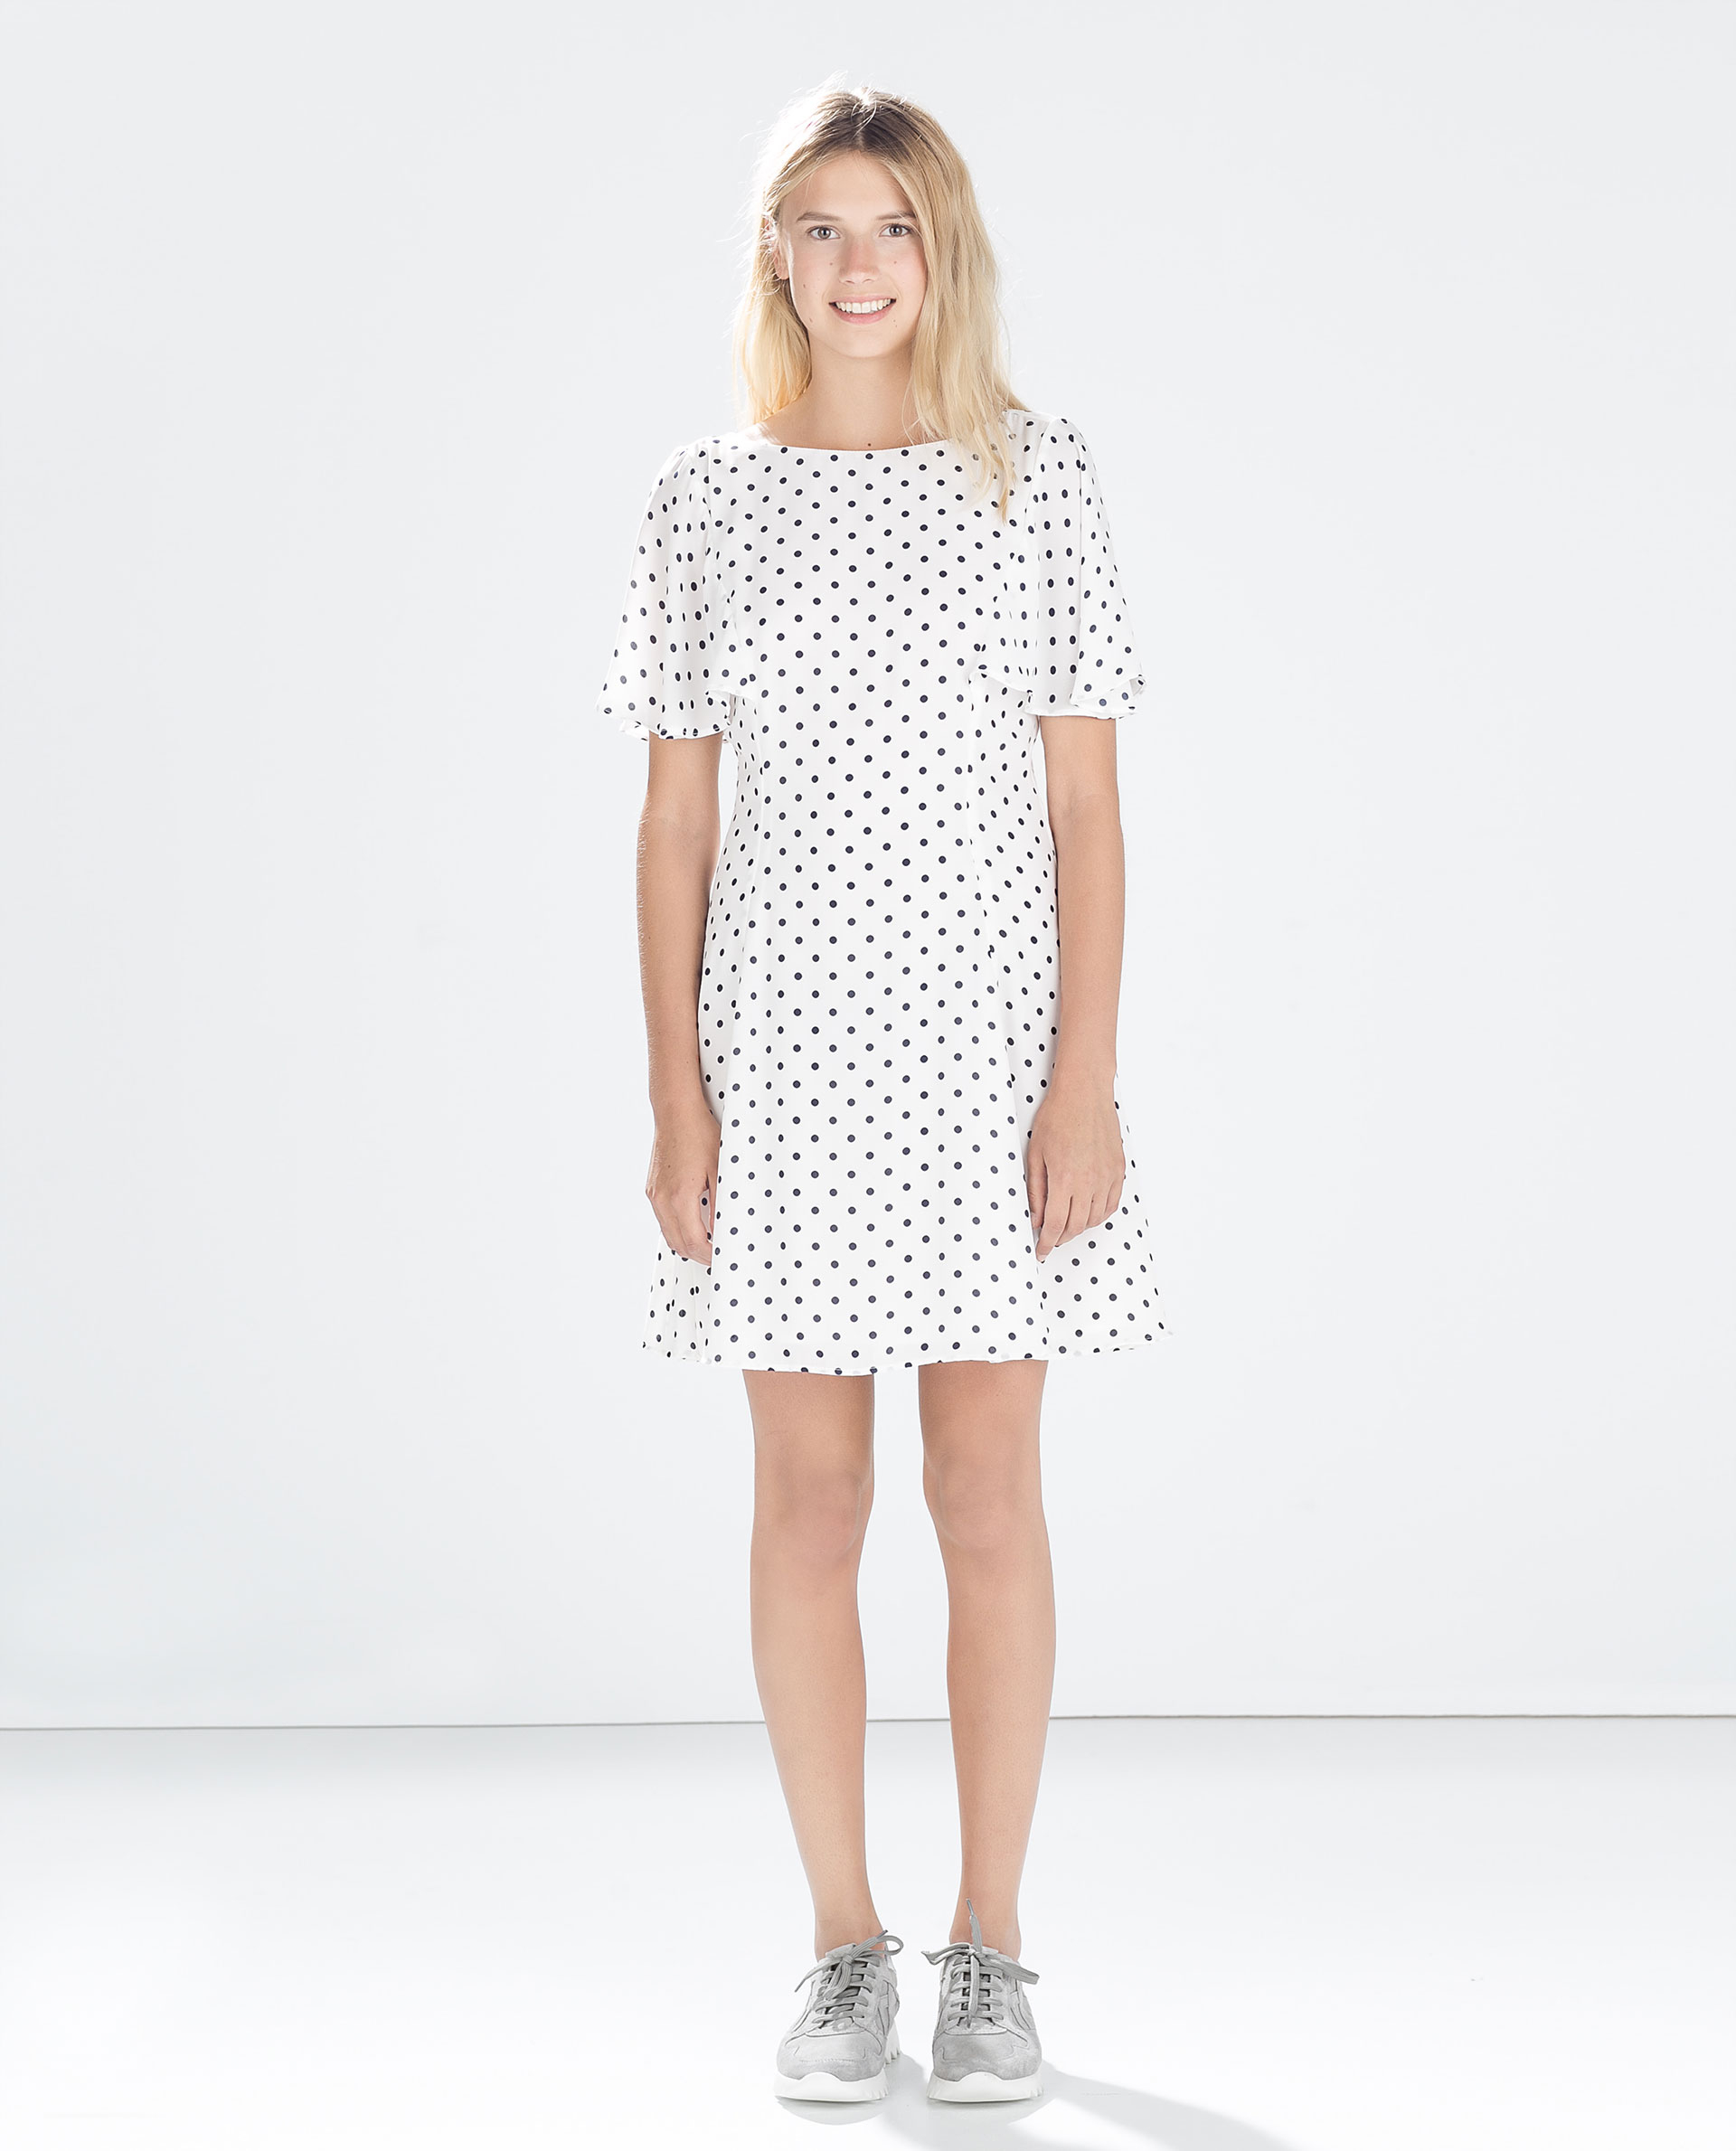 Zara Polka Dot Dress in White - Lyst